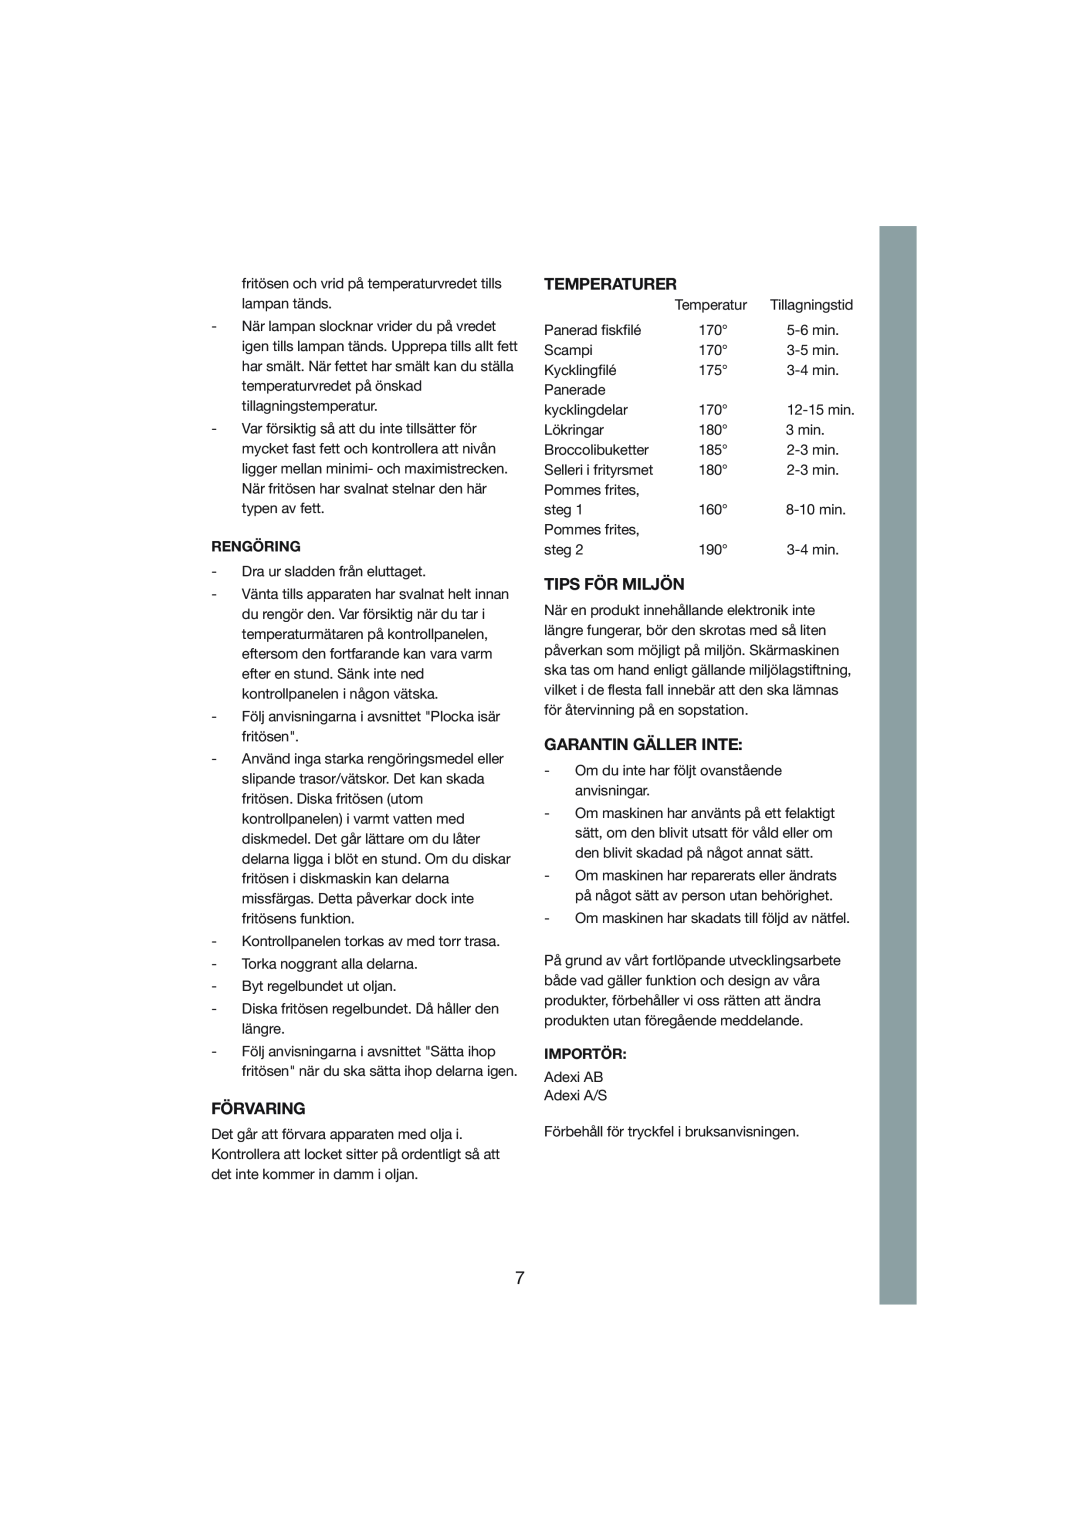 Melissa 243-009 manual Förvaring, Temperaturer, Tips För Miljön, Garantin Gäller Inte, Rengöring, Importör 